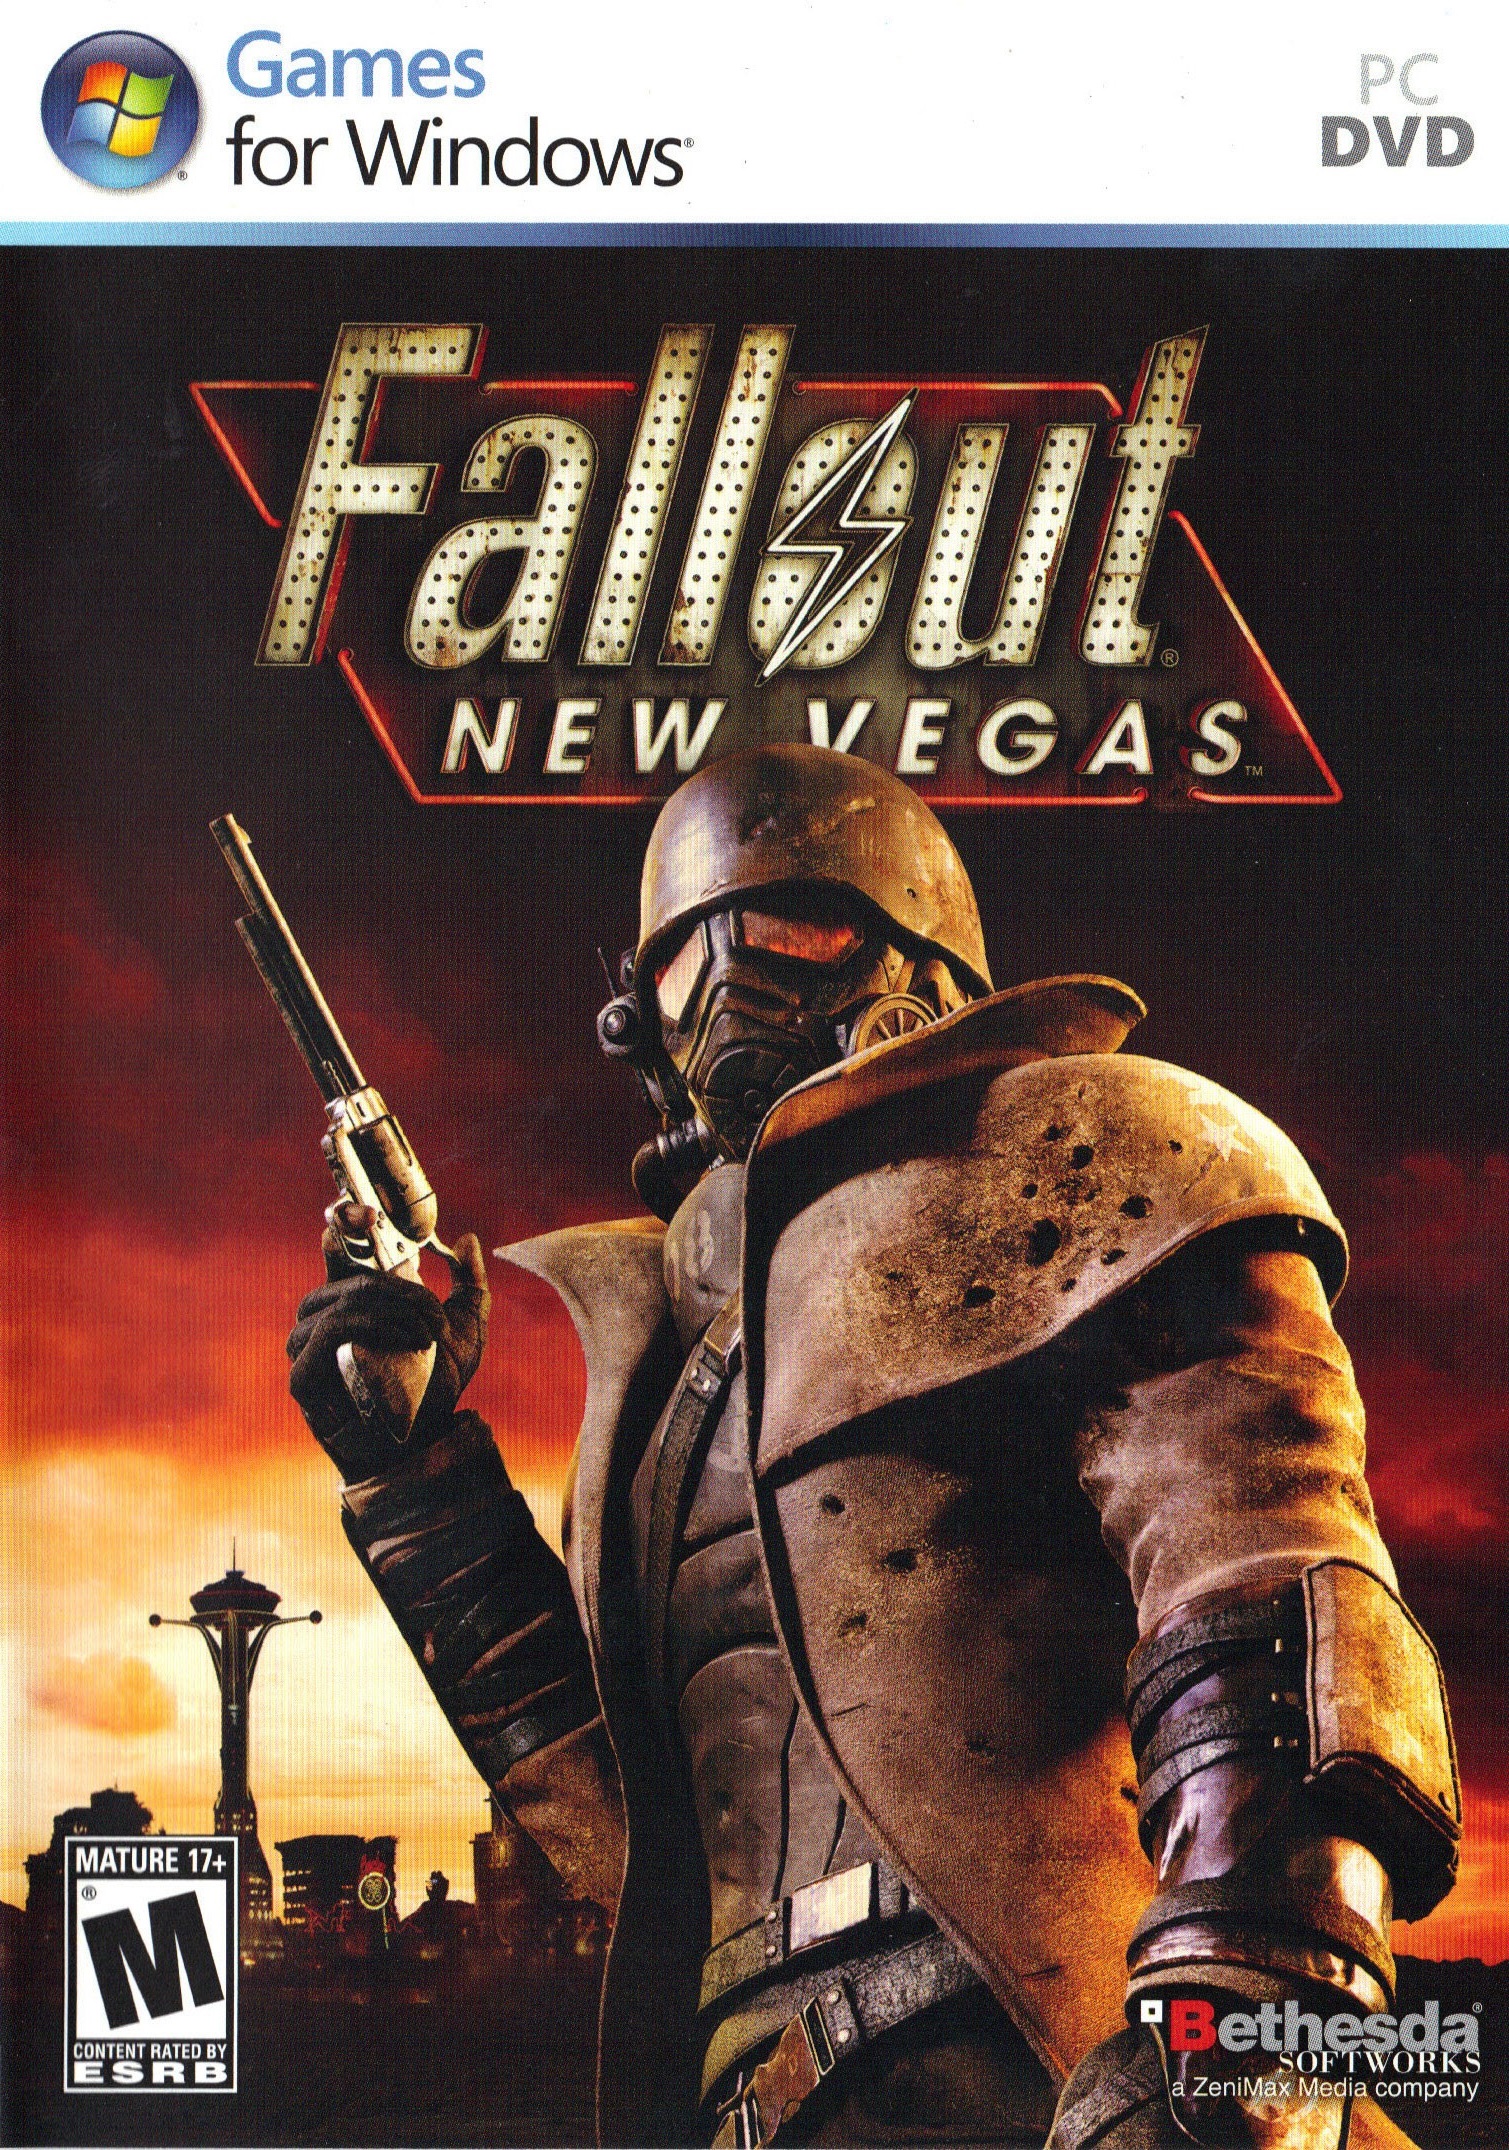 jaquette du jeu vidéo Fallout New Vegas